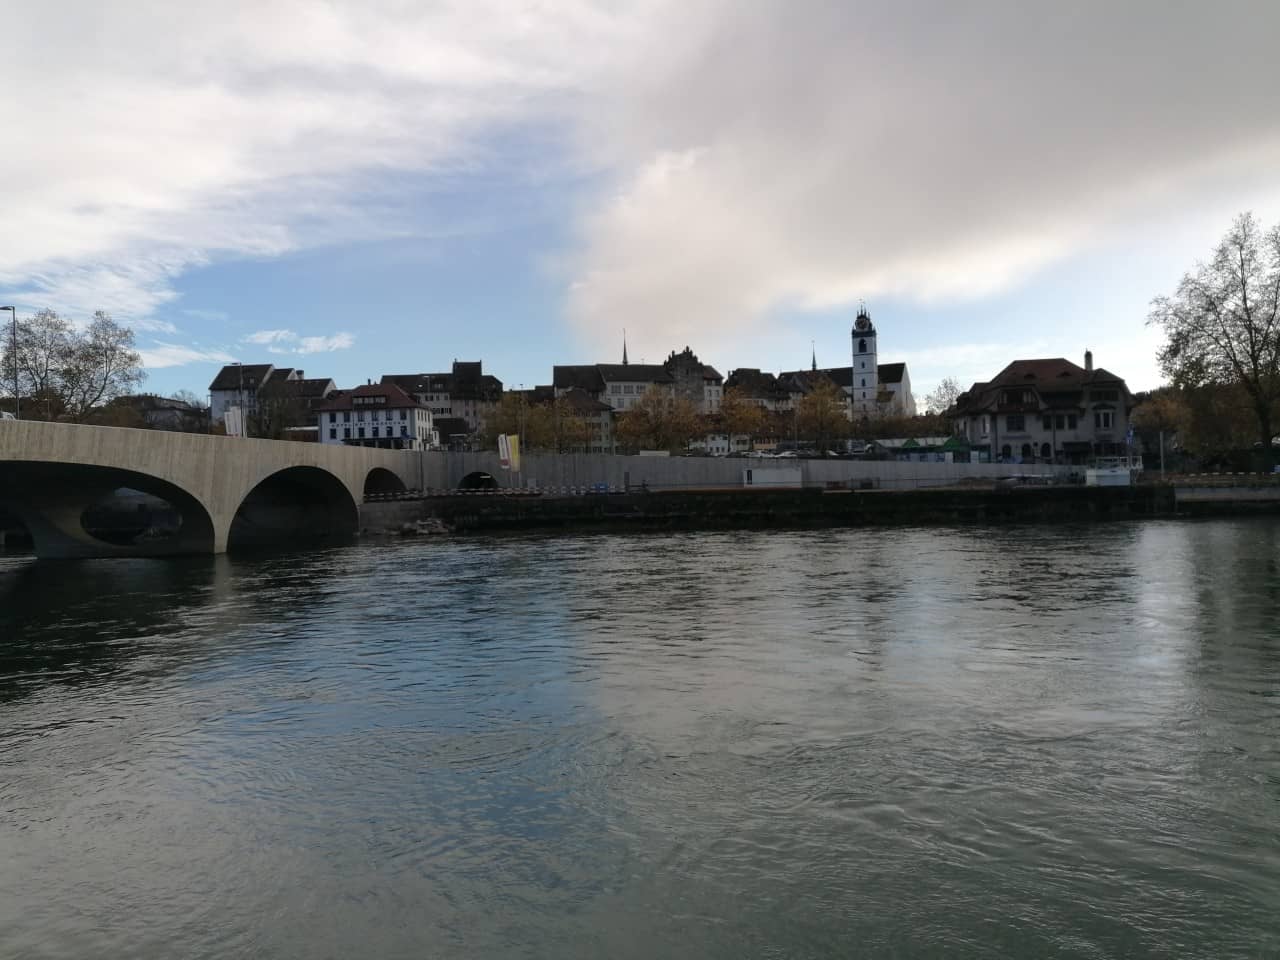 Sicht auf die Altstadt von Aarau, links im Bild die neue Aarebrücke, die bereits frei ist von Leergerüst und Spundkasten ist.